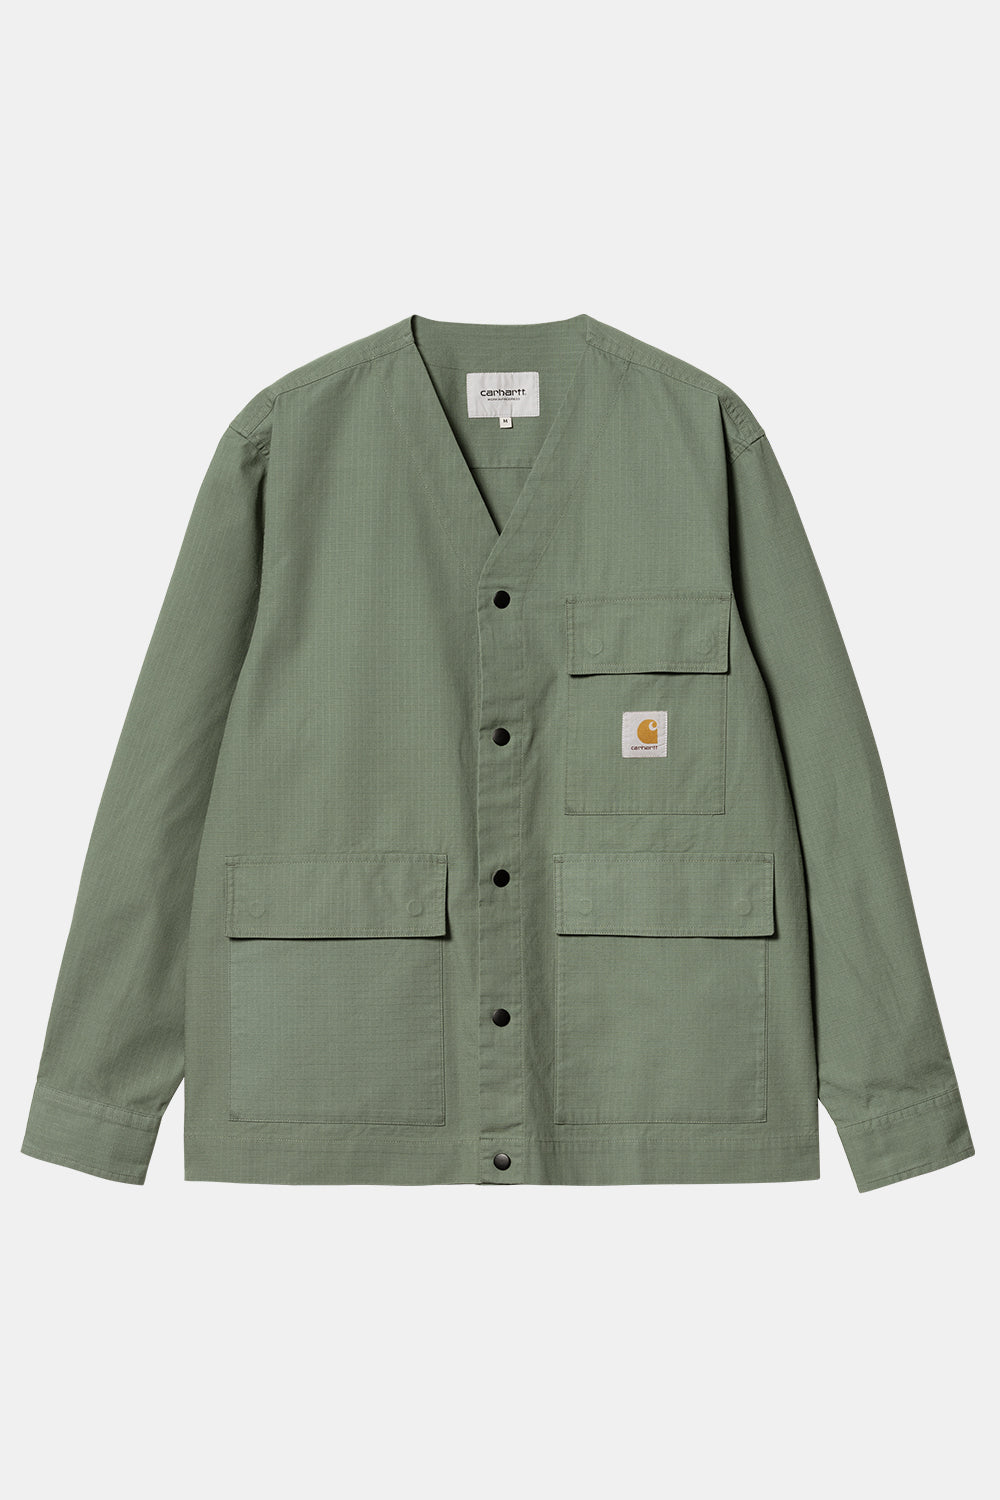 Carhartt WIP Elroy Shirt Jac (Park Green)